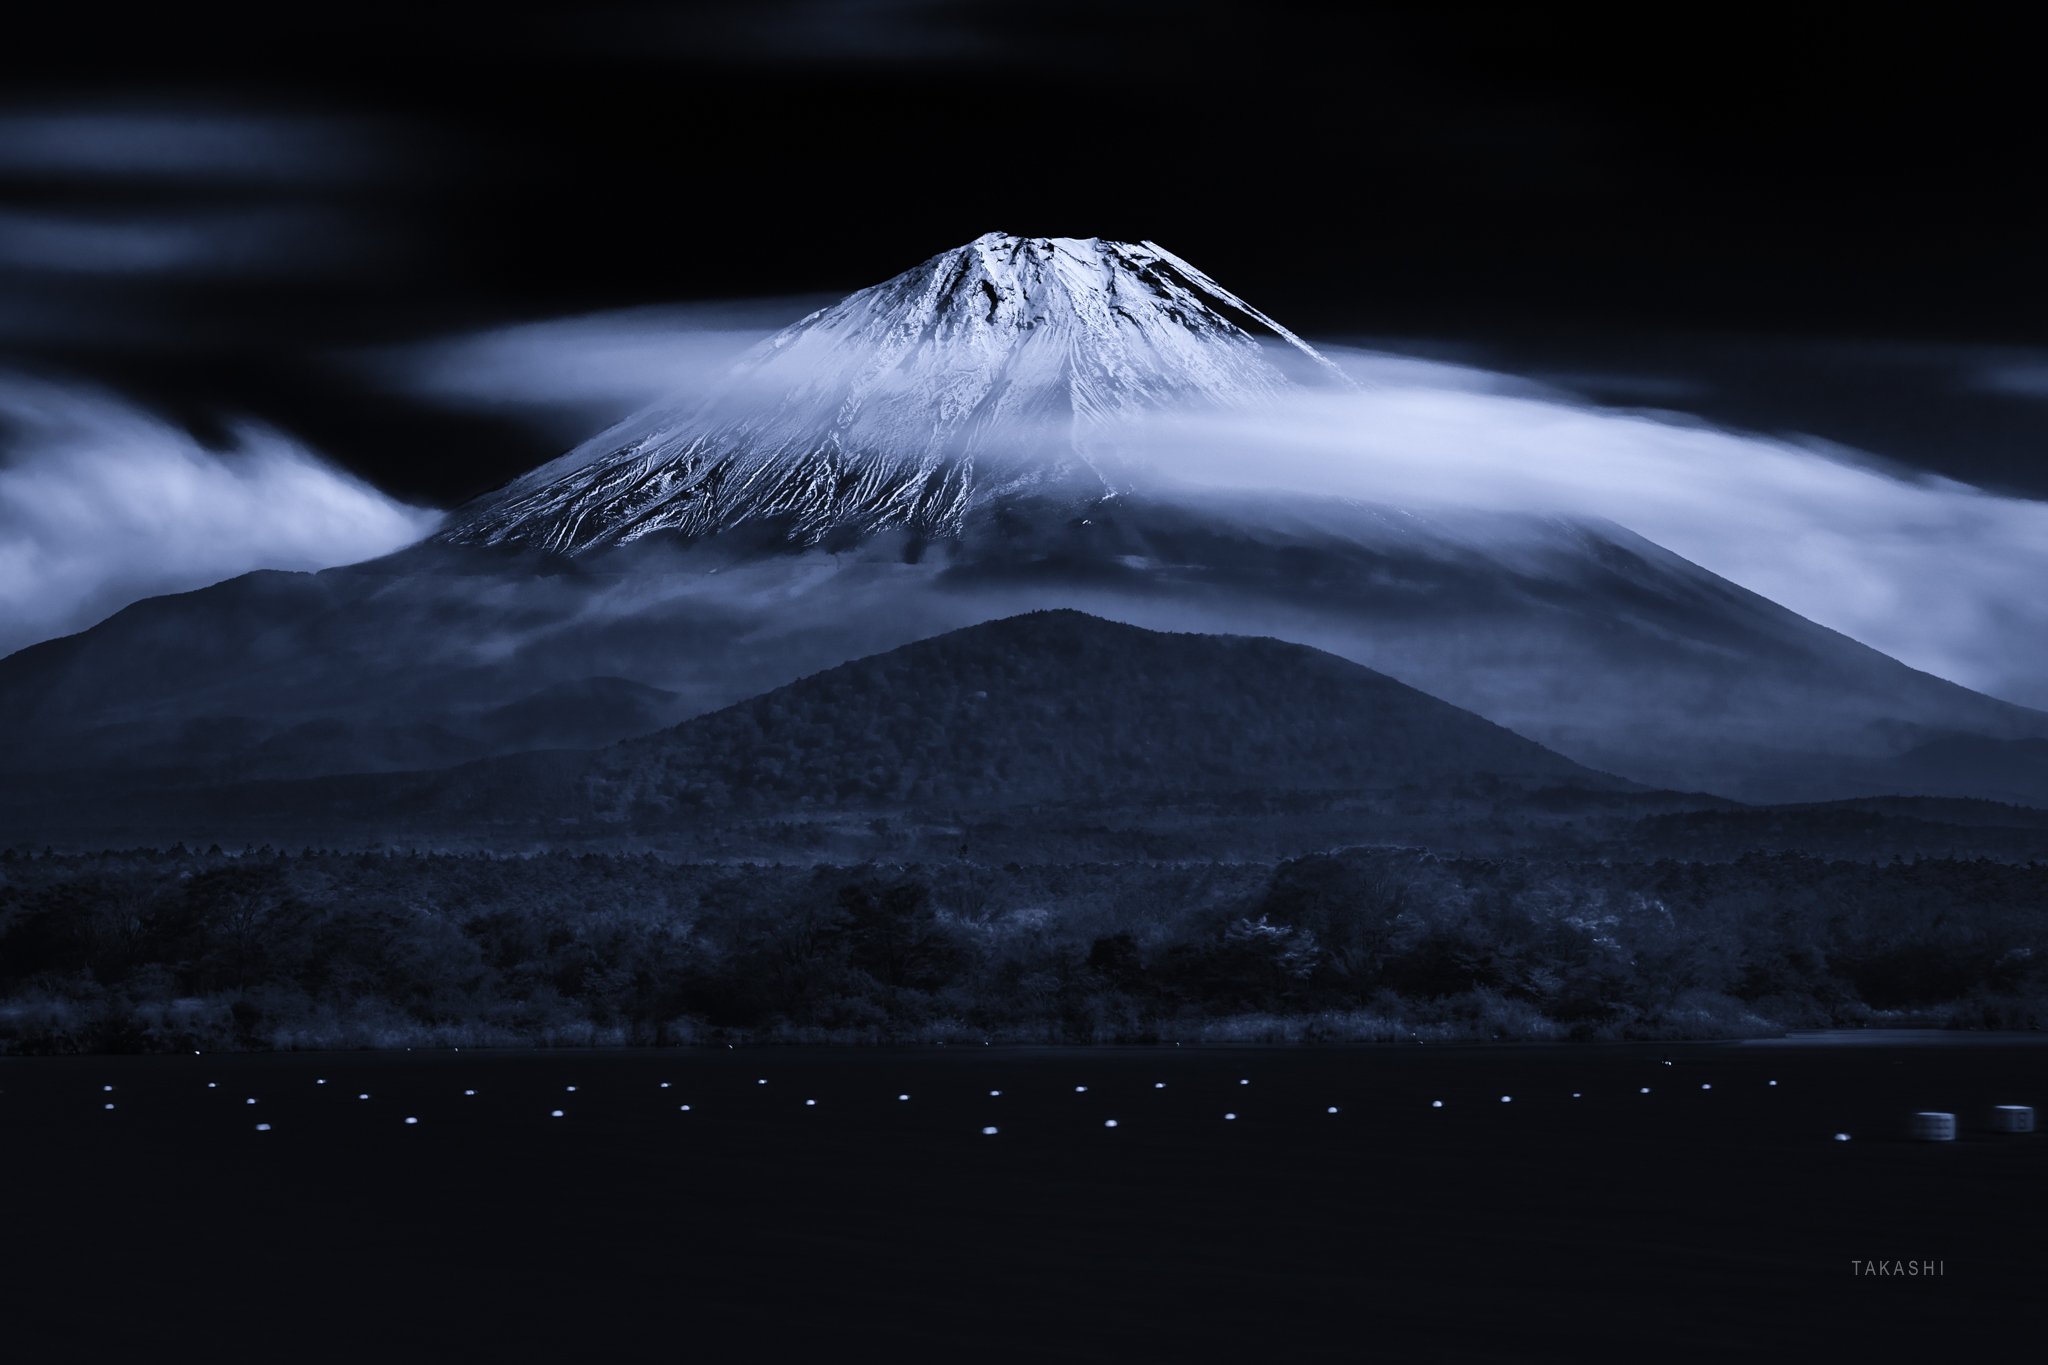 Fuji,Japan,mountain,snow,clouds,lake,buoys, Takashi